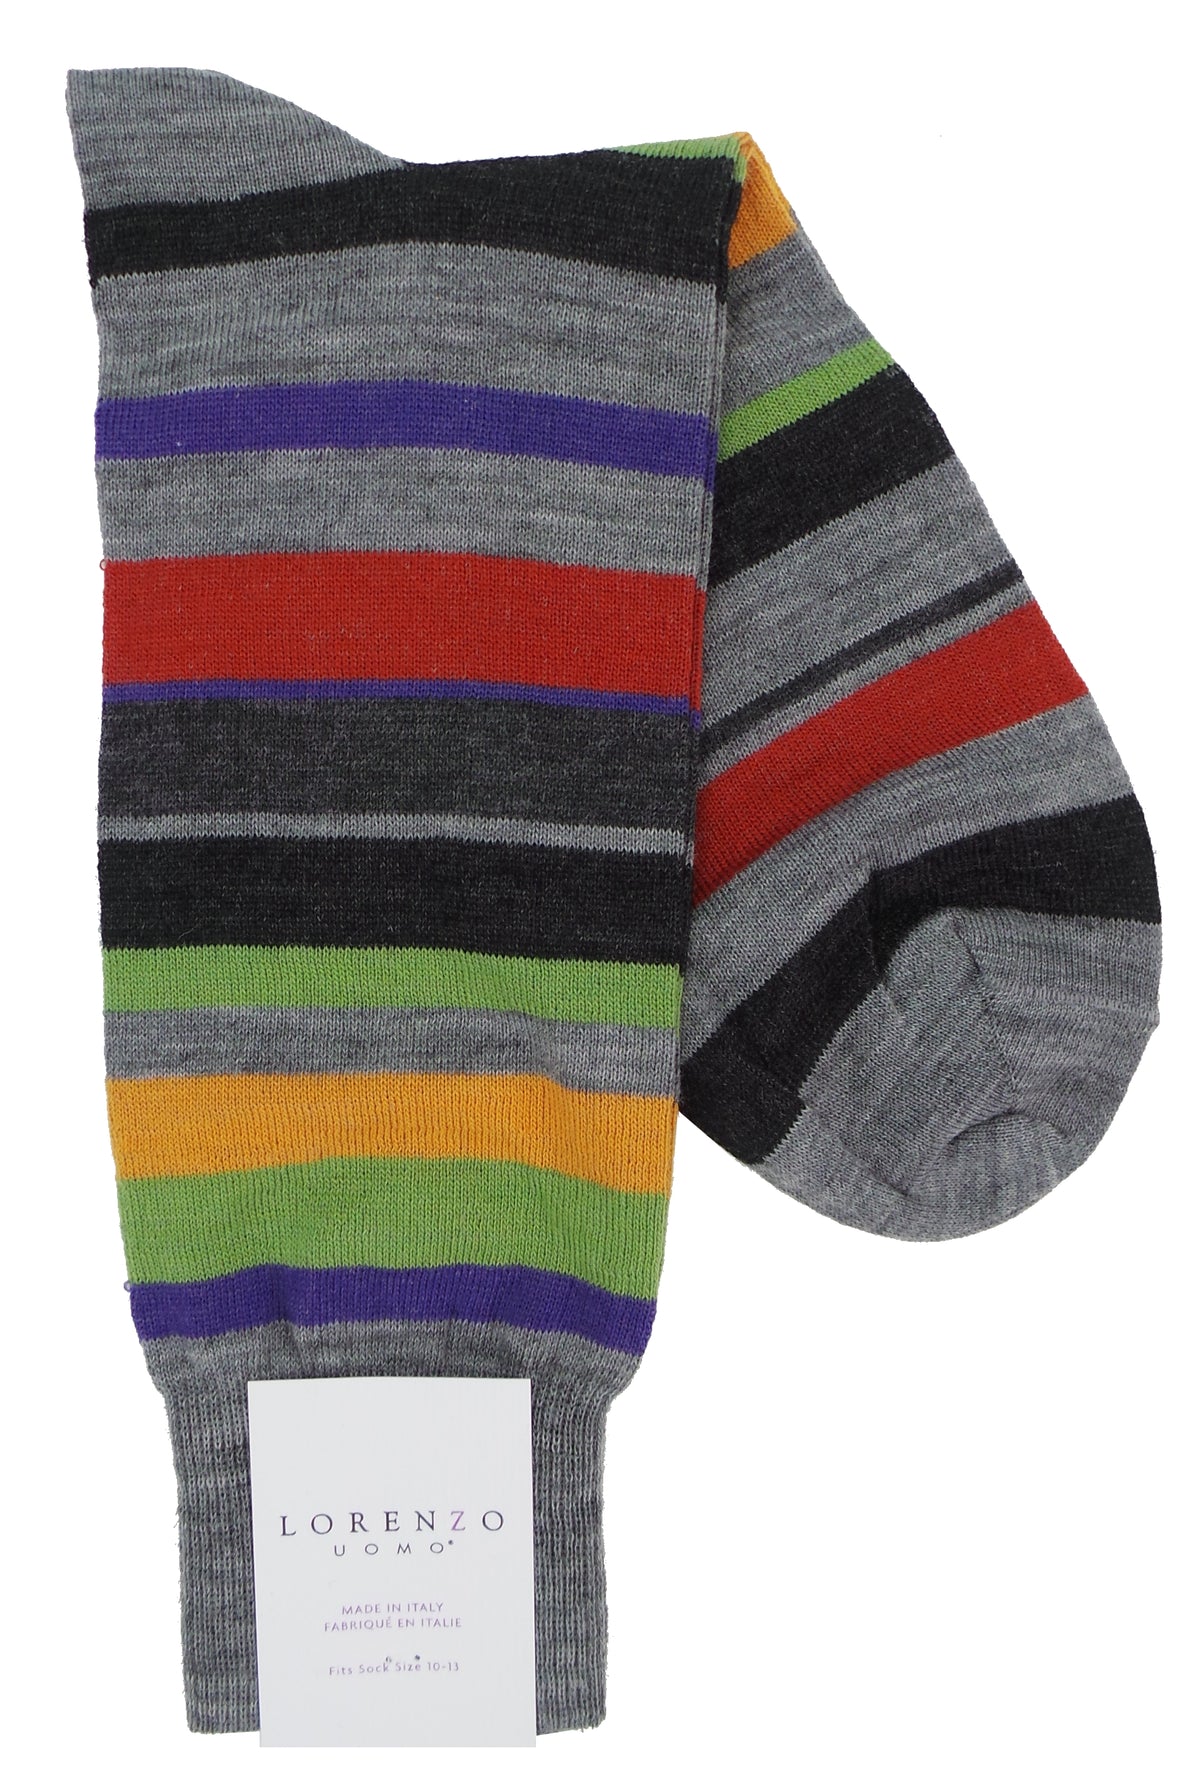 Lorenzo Uomo Multi Stripe Merino Wool Blend Socks